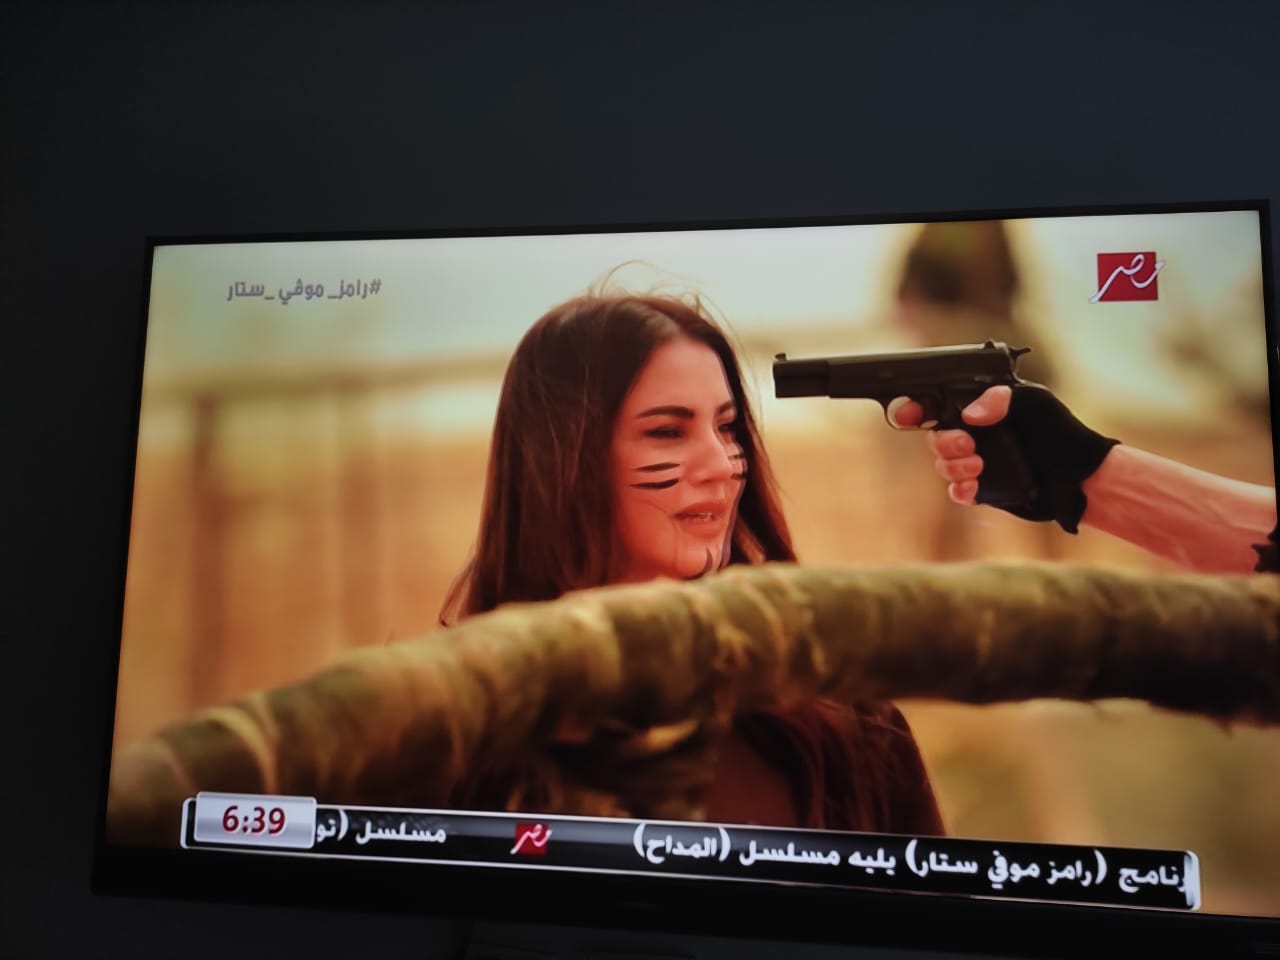 العود مشدود والقوام مفرود.. ملخص إيفيهات رامز جلال في حلقة درة 2